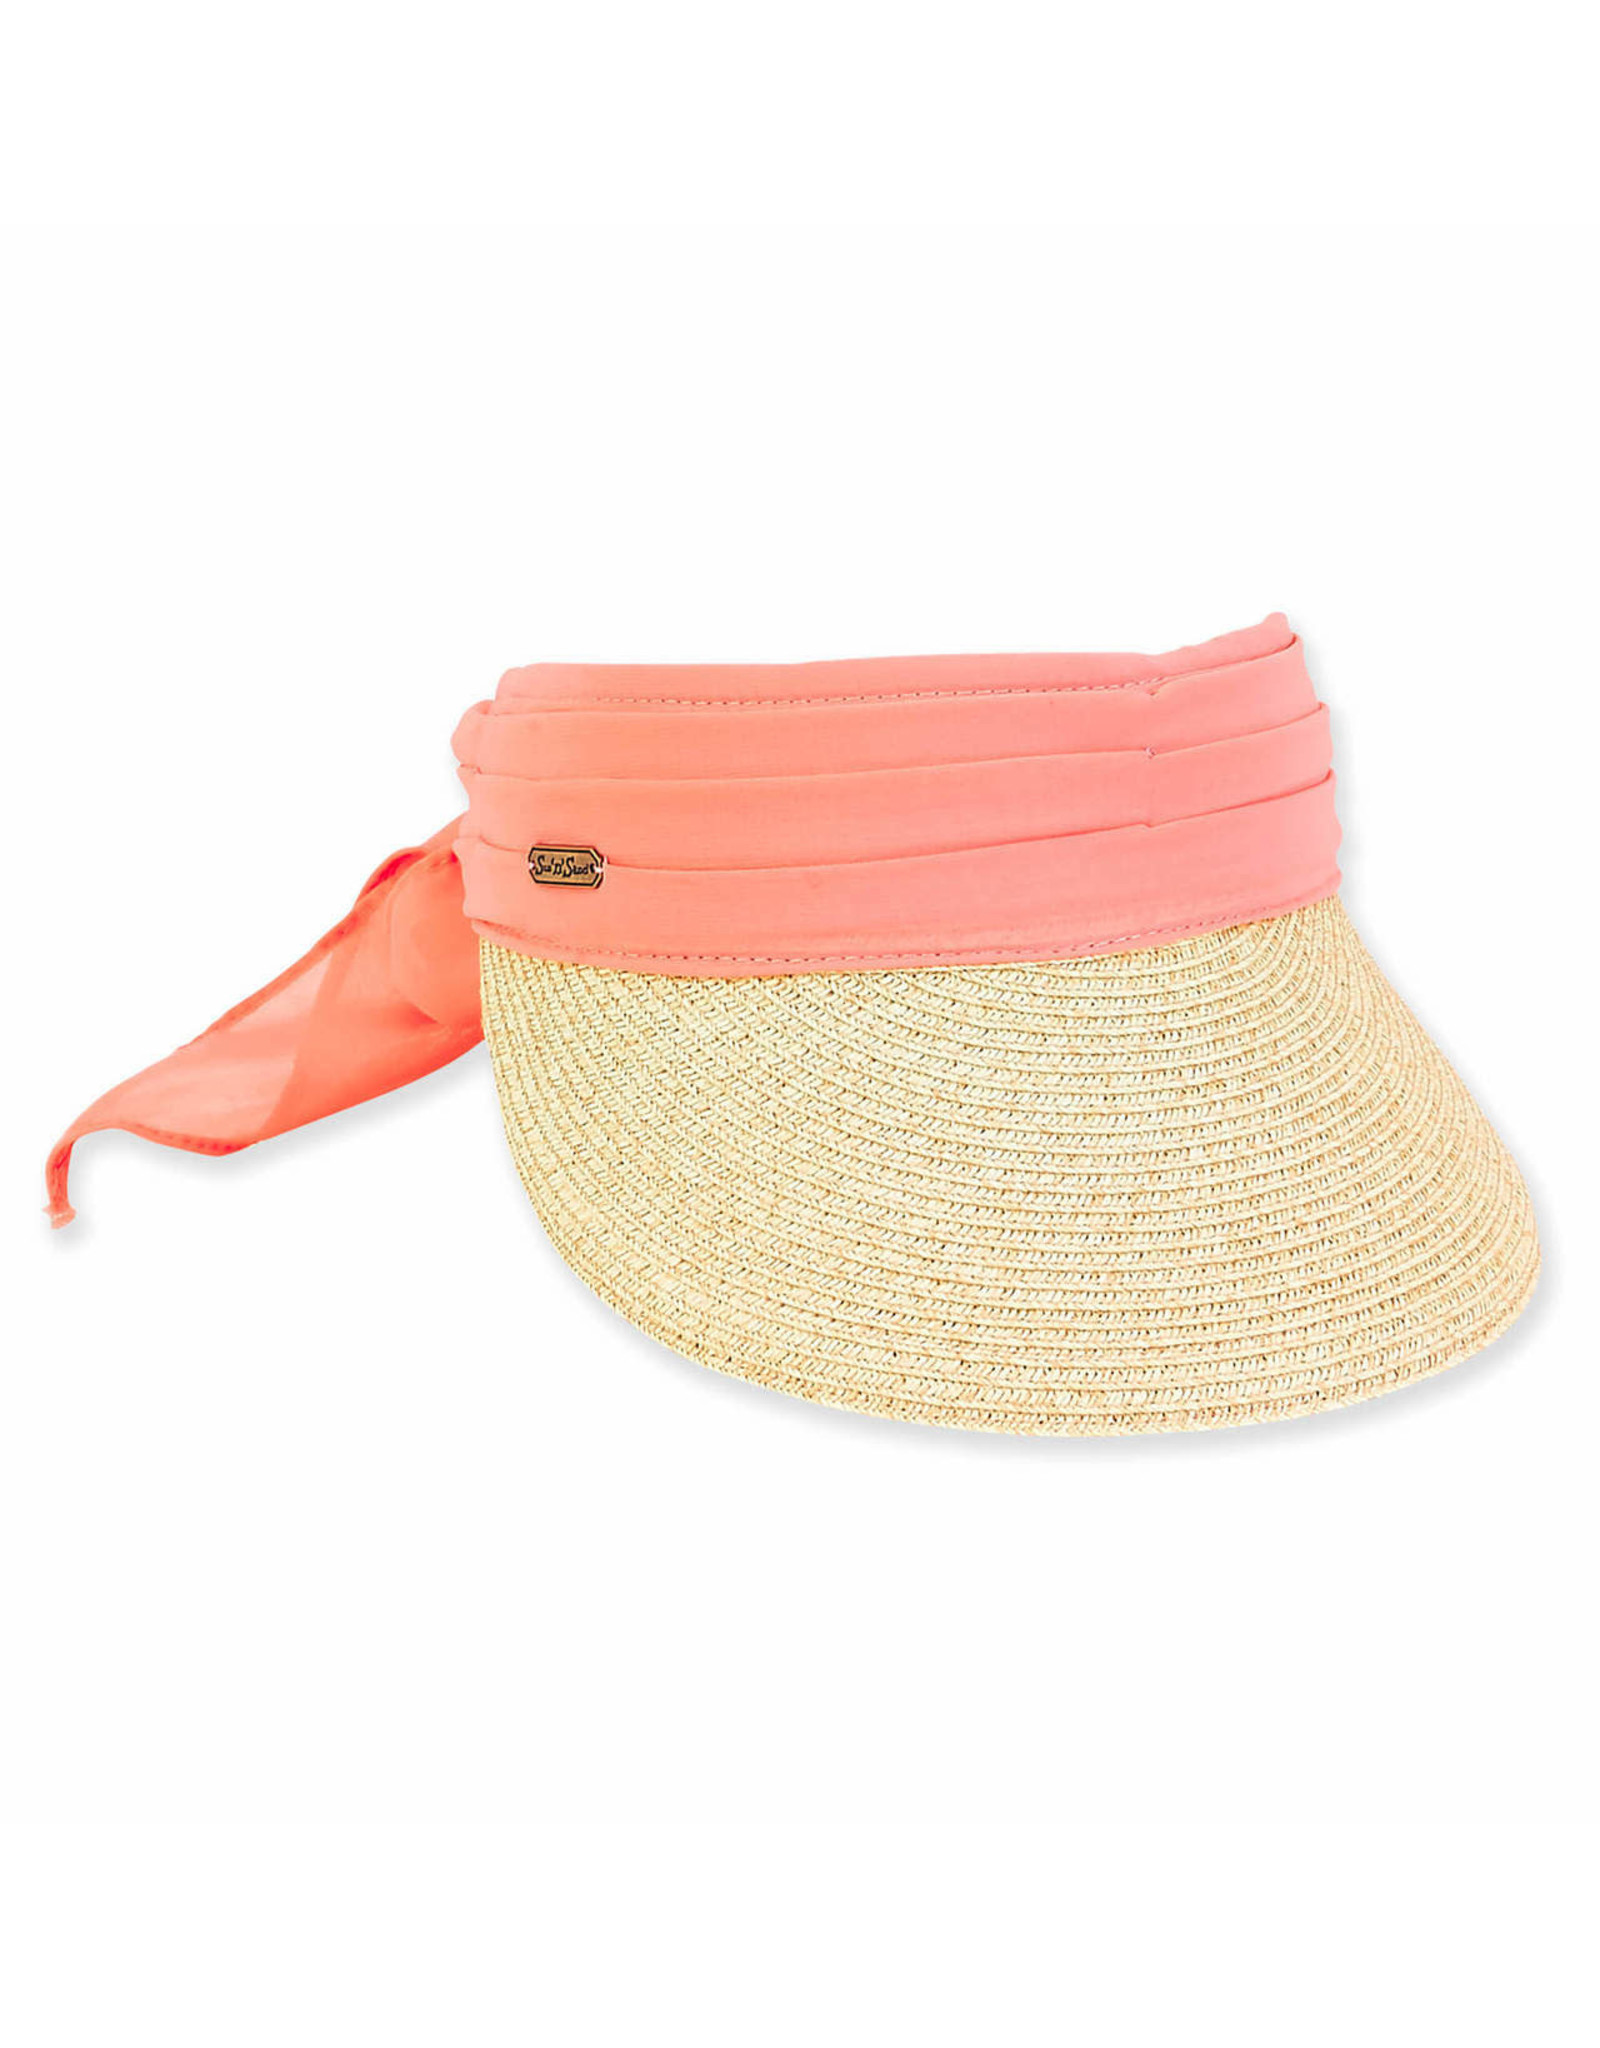 Sun N Sand Women's Hats Chiffon Scarf Straw Visor - Coral